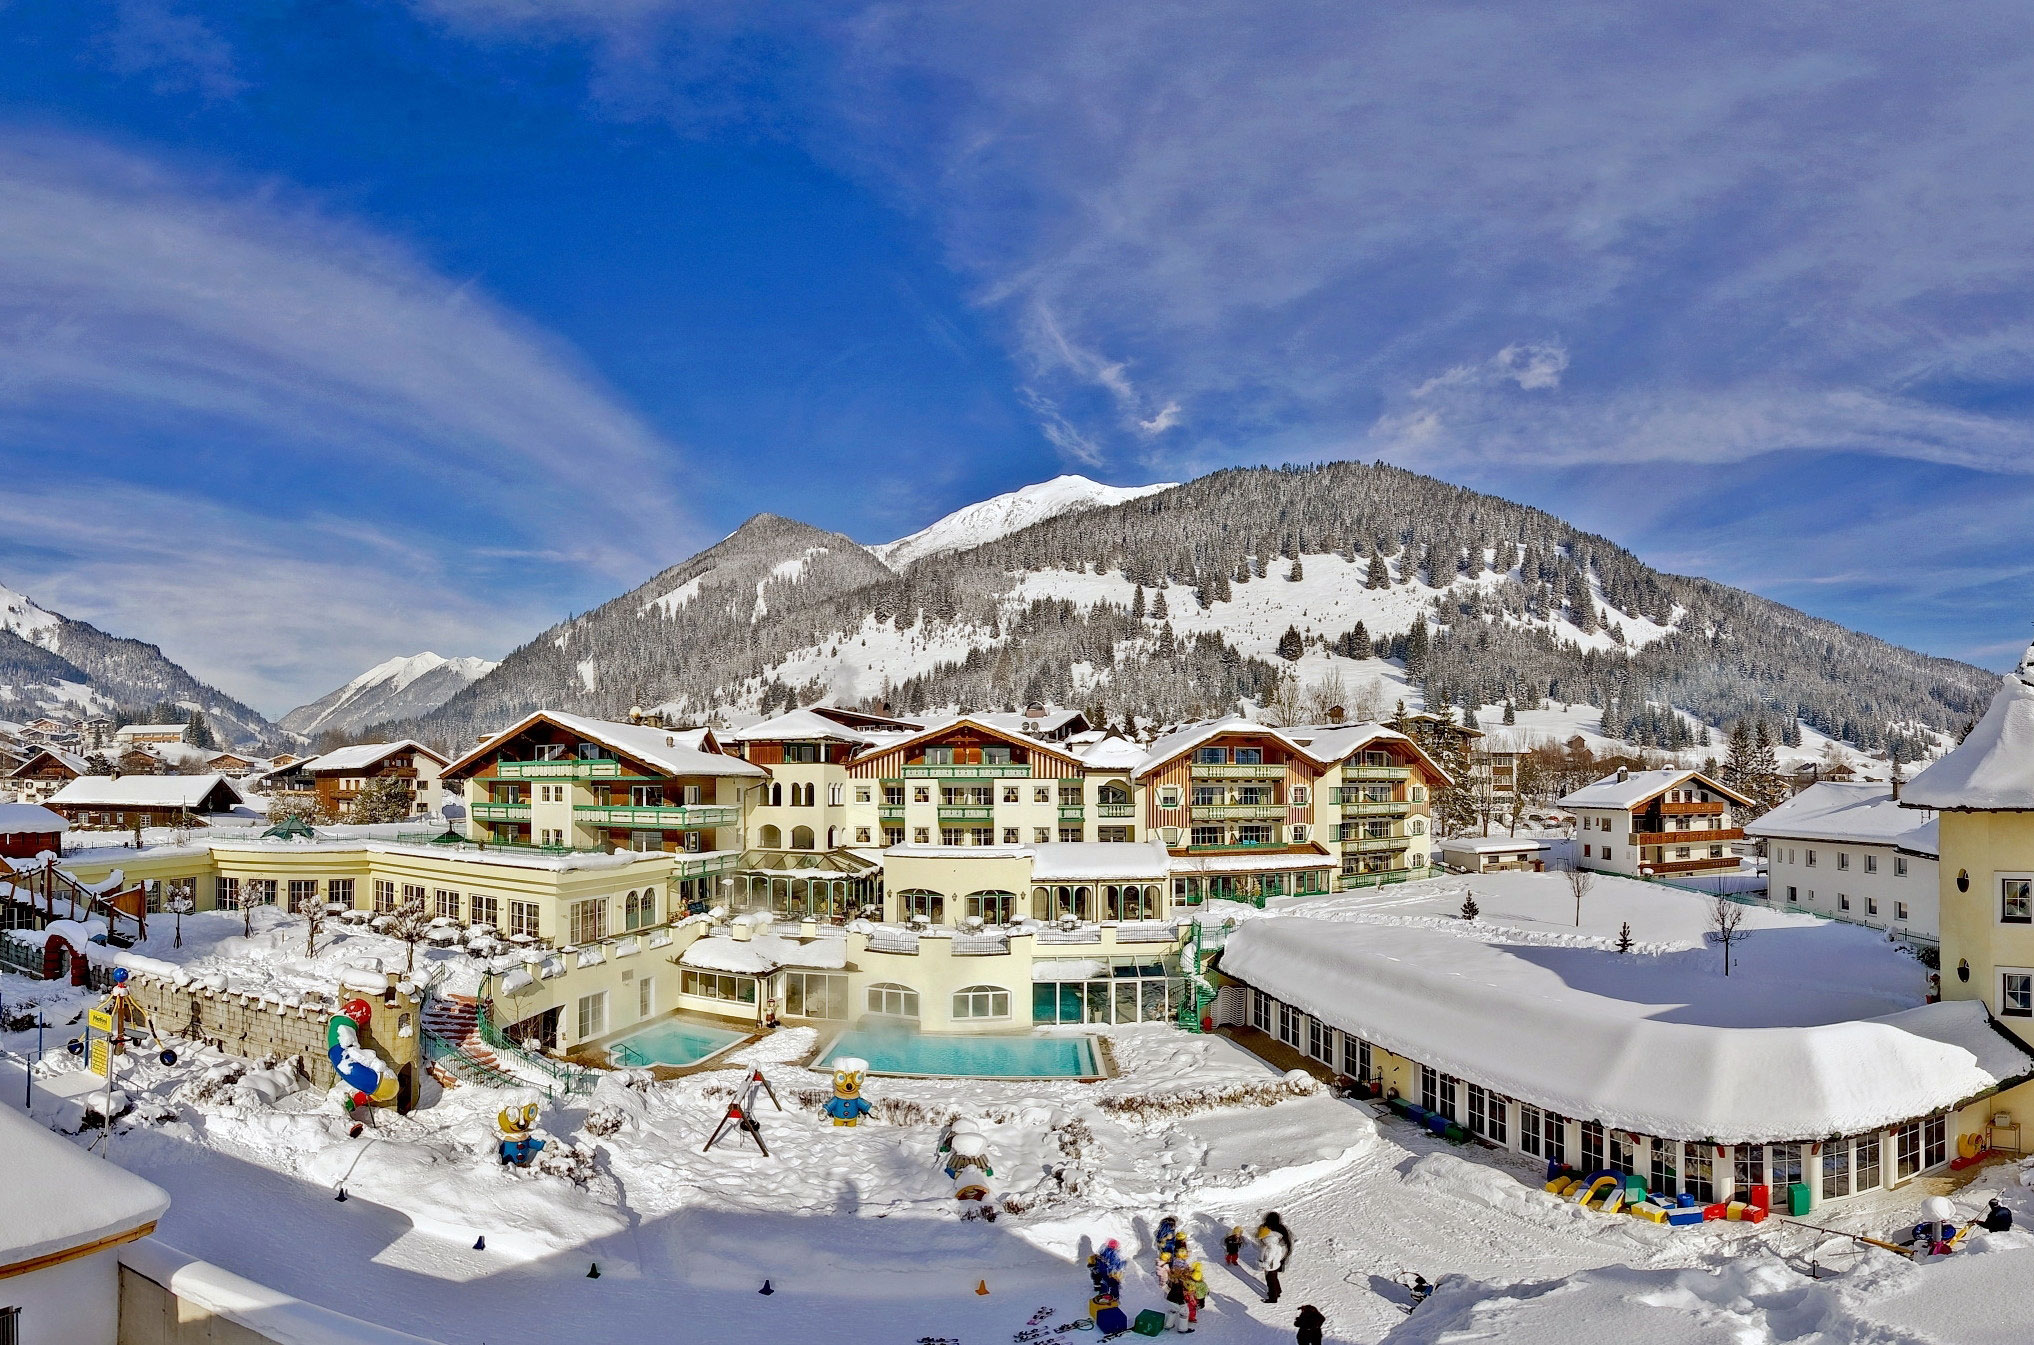 Leading Family Hotel & Resort Alpenrose